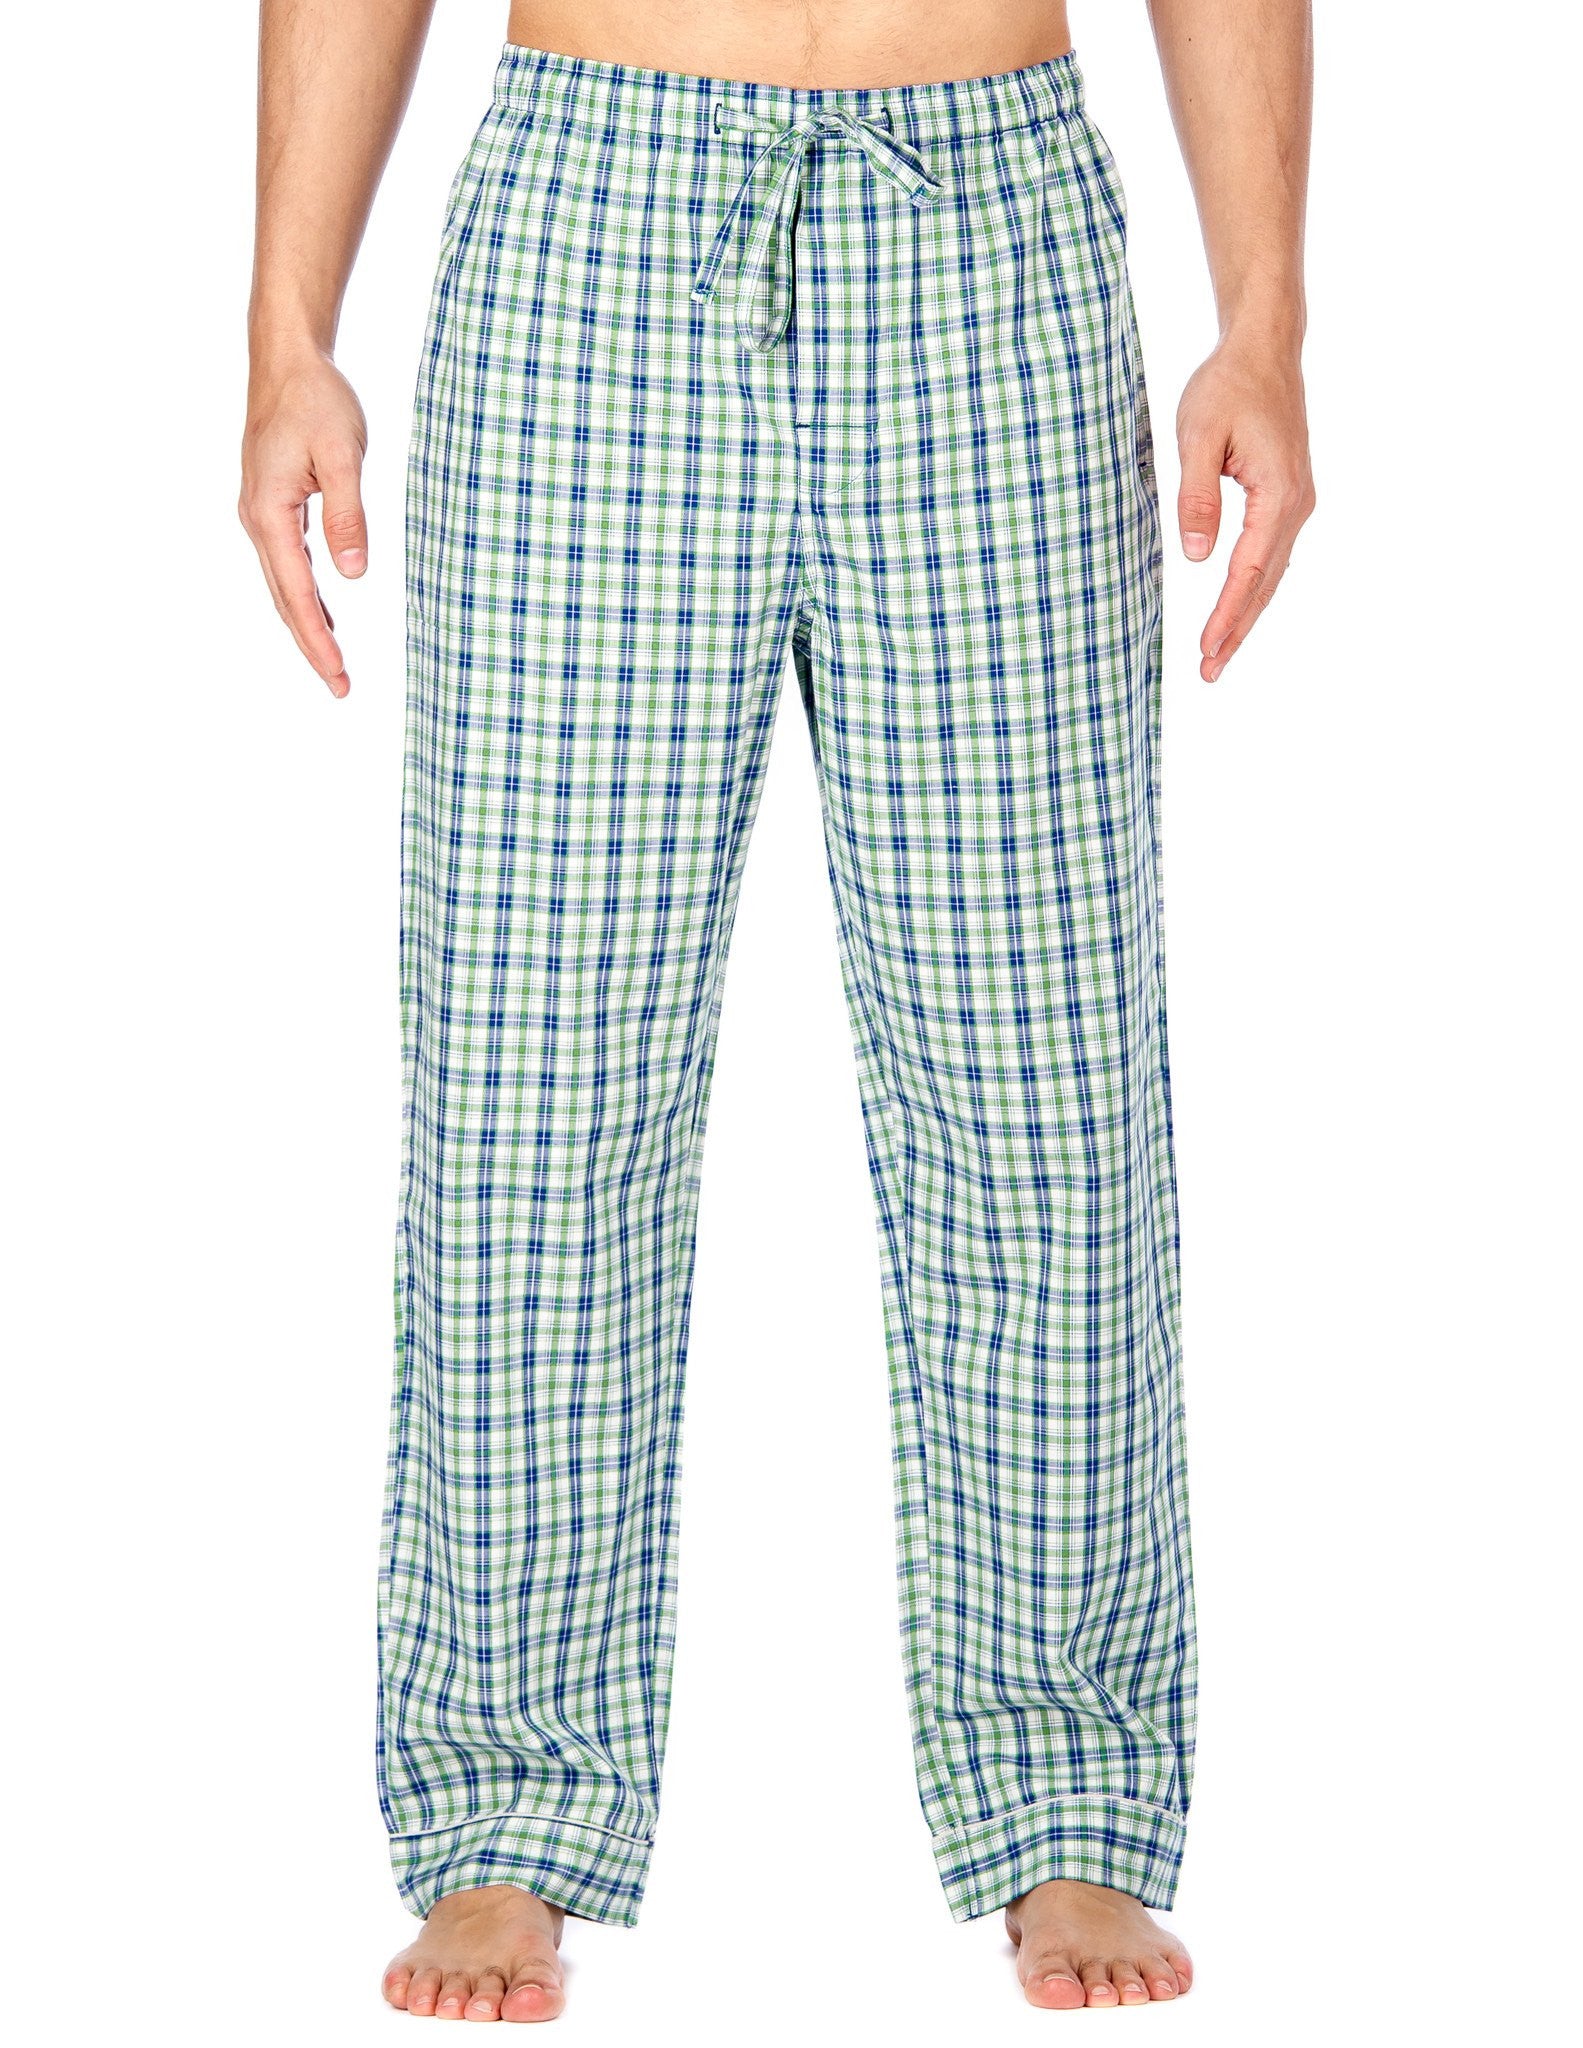 Men's Bamboo Sleep/Lounge Pants